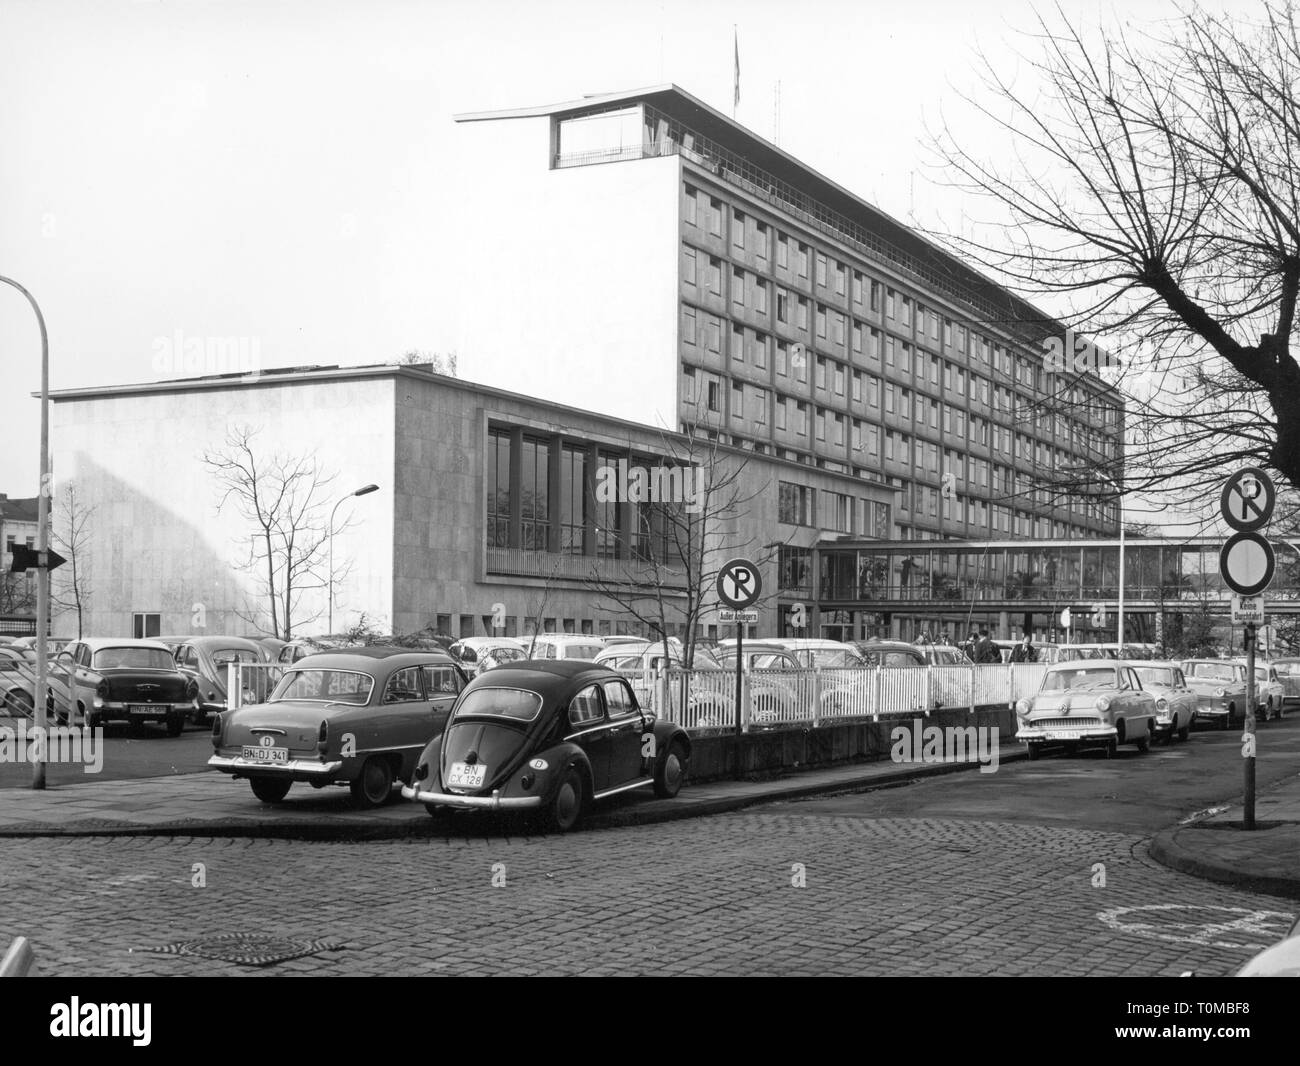 Géographie / voyage, Allemagne, Bonn, bâtiment, Foreign Office, vue extérieure, début des années 70, l'Additional-Rights Clearance-Info-Not-Available- Banque D'Images